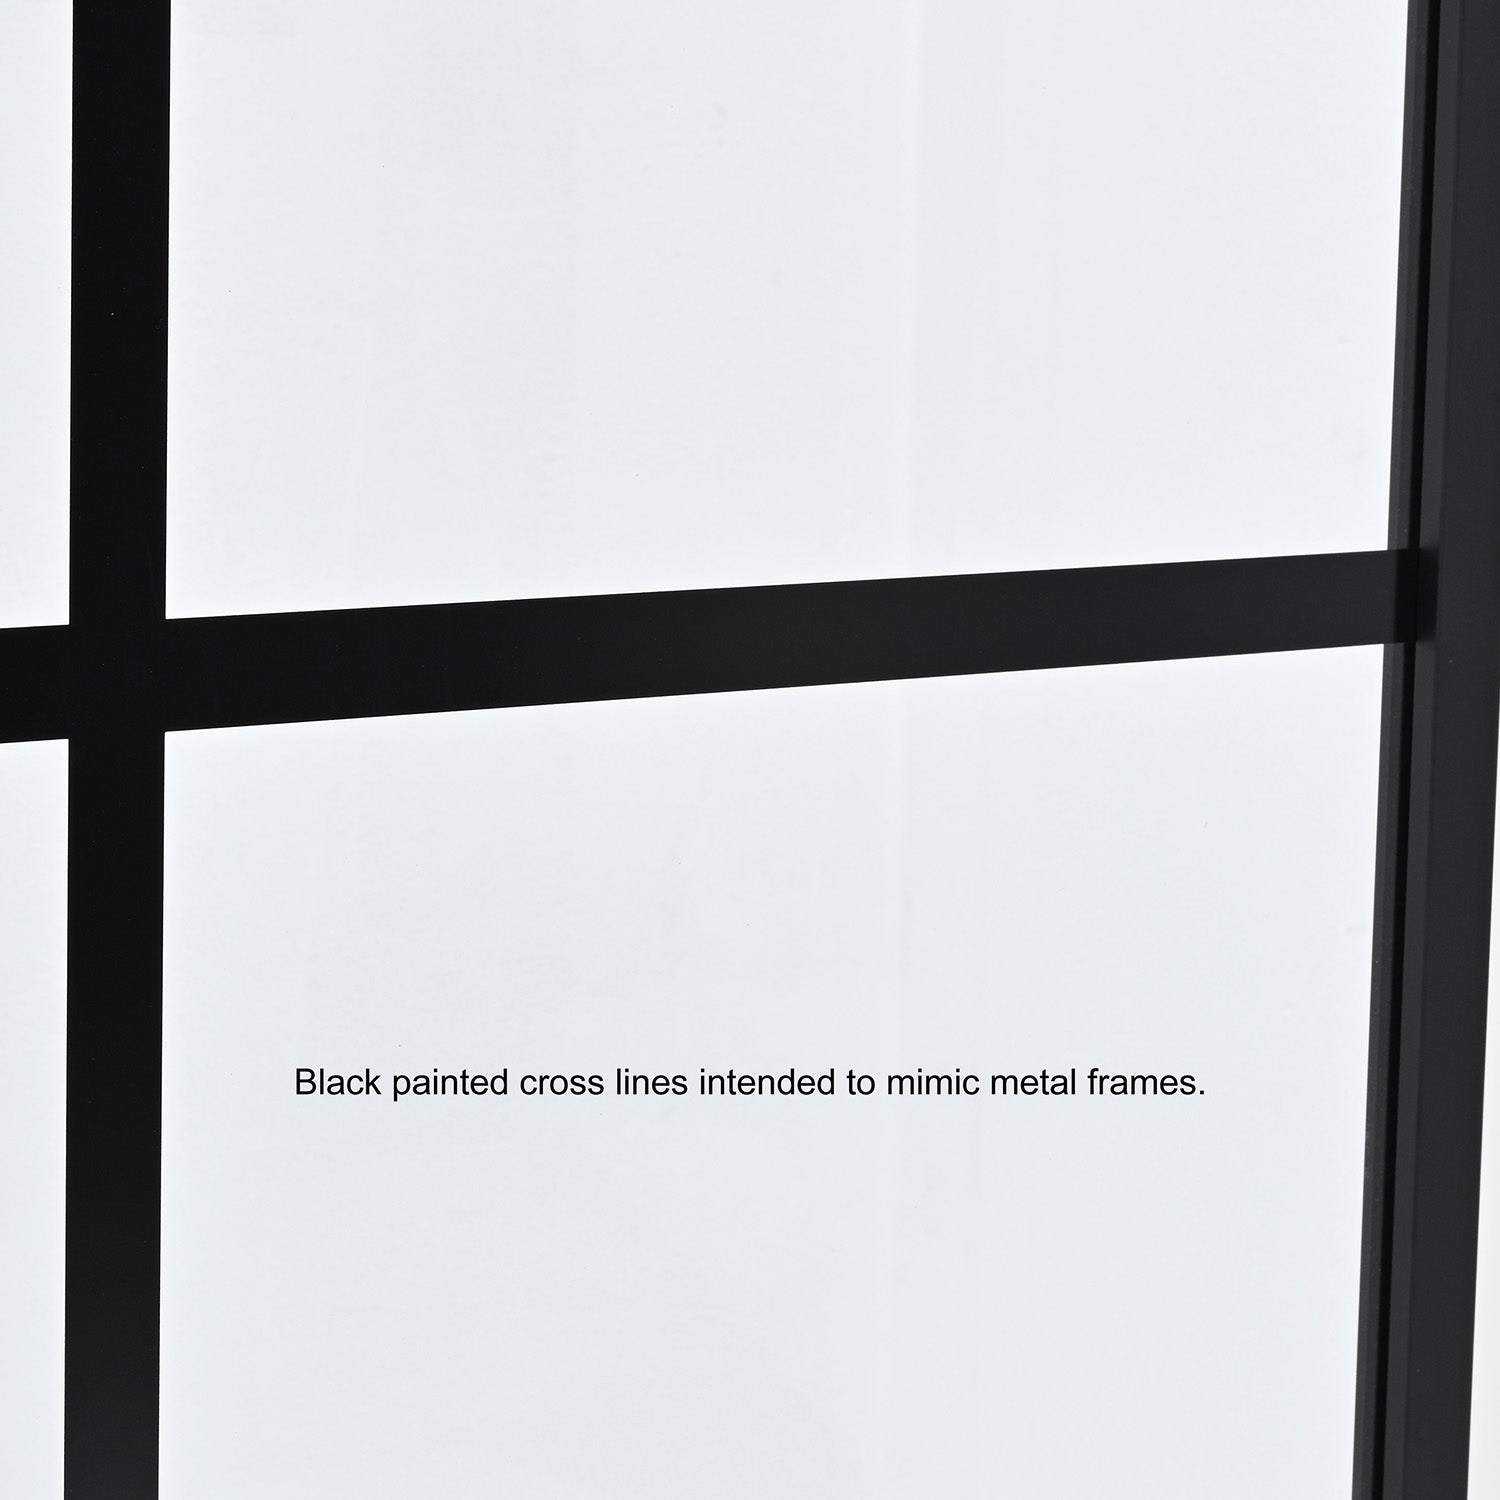 Vinnova Design Azpeitia 34" W x 74" H Framed Fixed Glass Panel in Matte Black - New Star Living